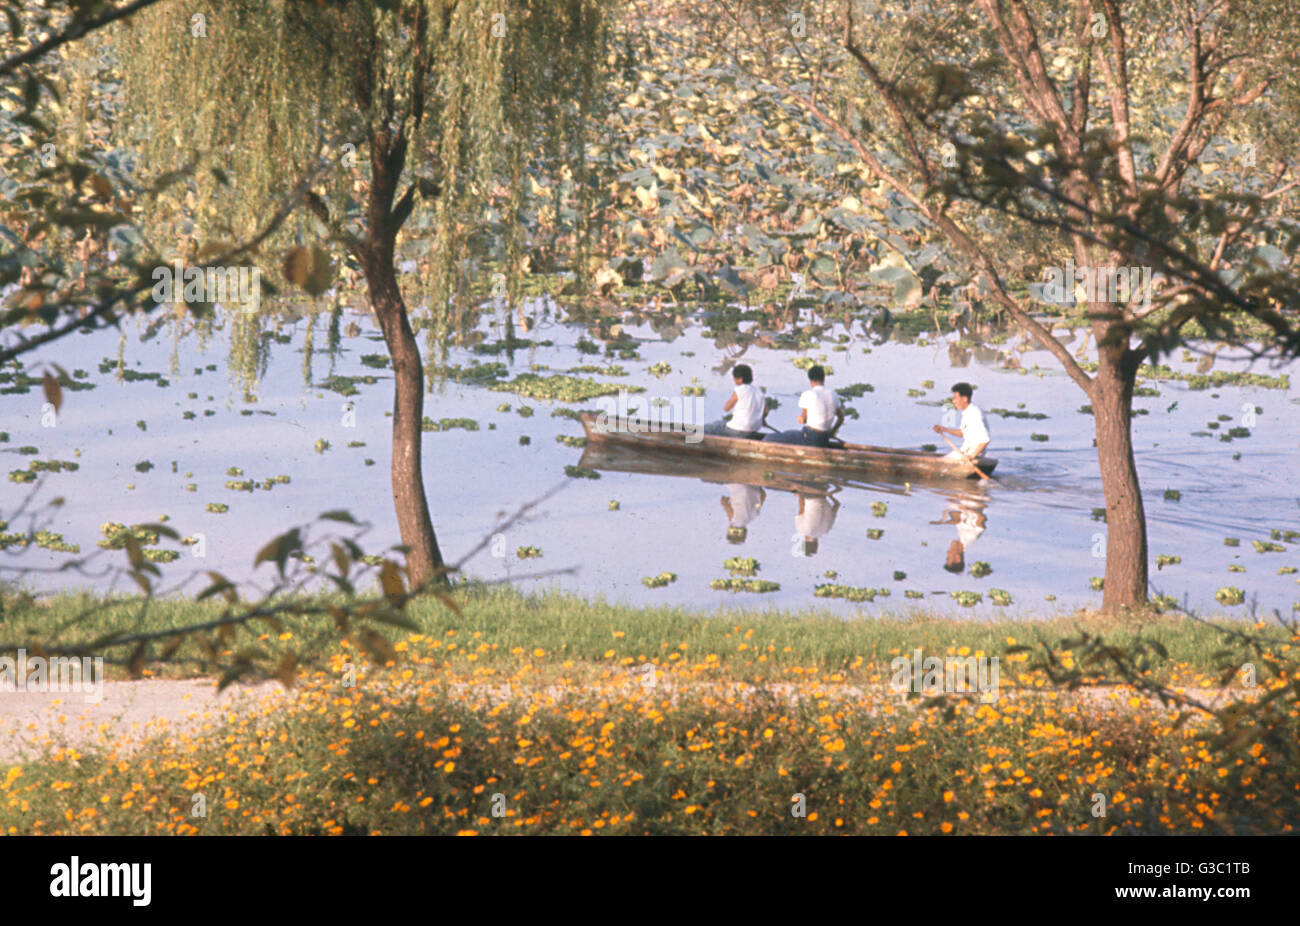 Boating on a lake near Nanking (Nanjing), China Stock Photo